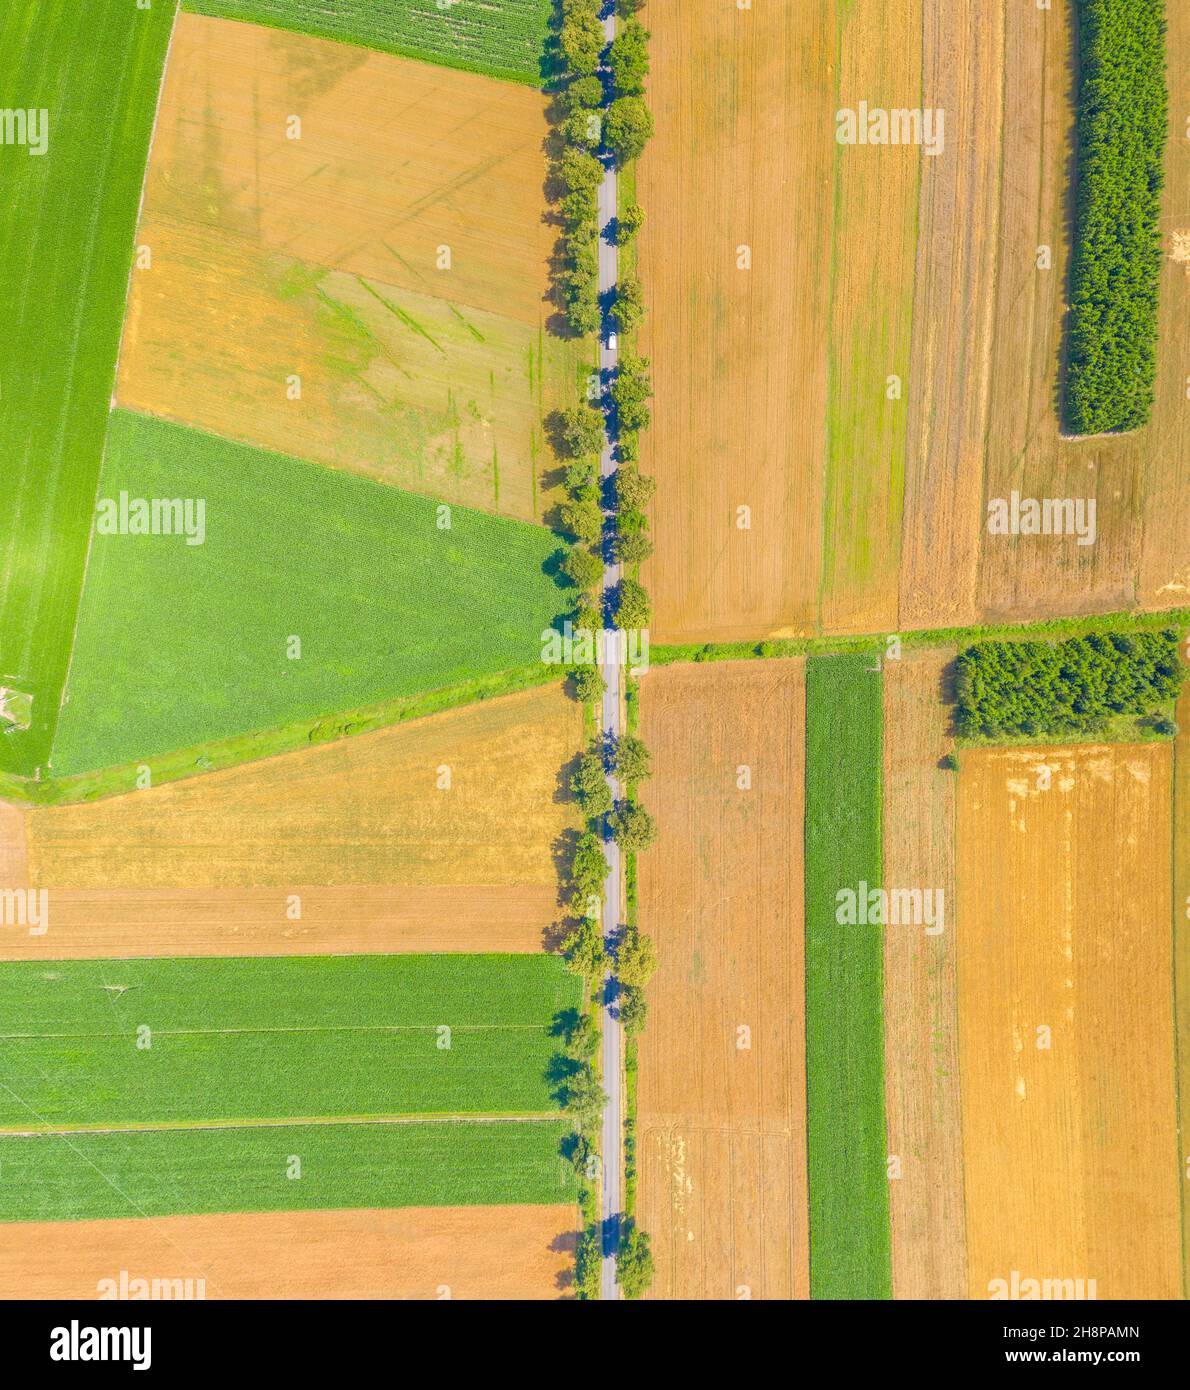 Luftaufnahme der Sommerlandschaft von grünen landwirtschaftlichen Feld mit einem Feldweg und einem Waldgürtel bei Sonnenuntergang, von einem Kopter wie ein Vogelauge, Panora geschossen Stockfoto